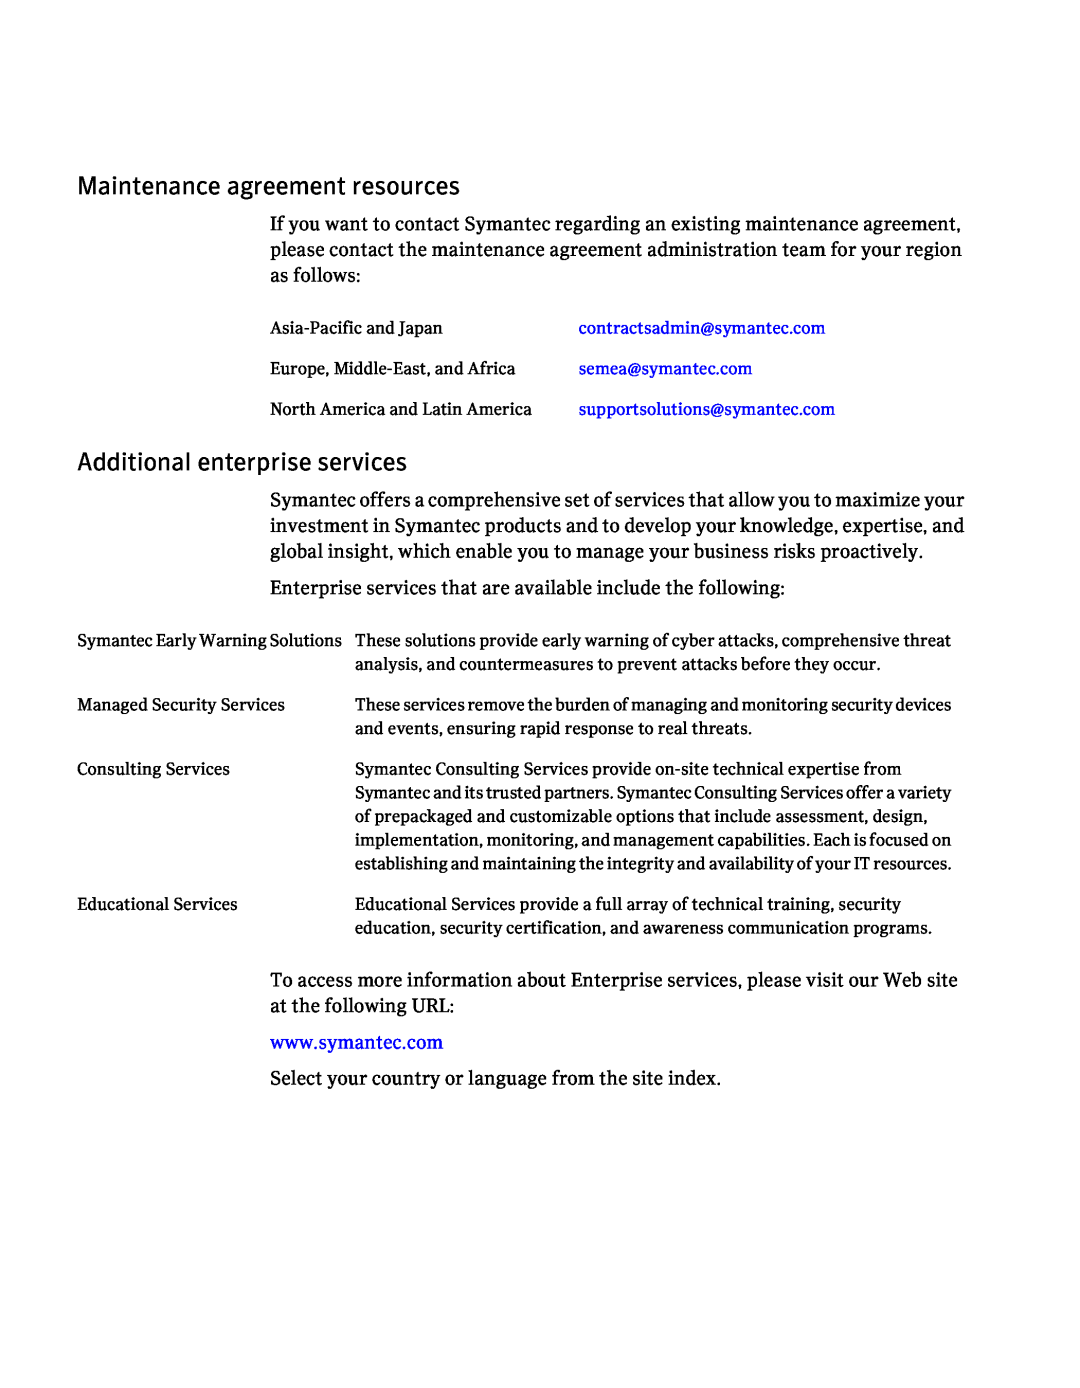 Symantec 5.1 manual Maintenance agreement resources, Additional enterprise services, contractsadmin@symantec.com 